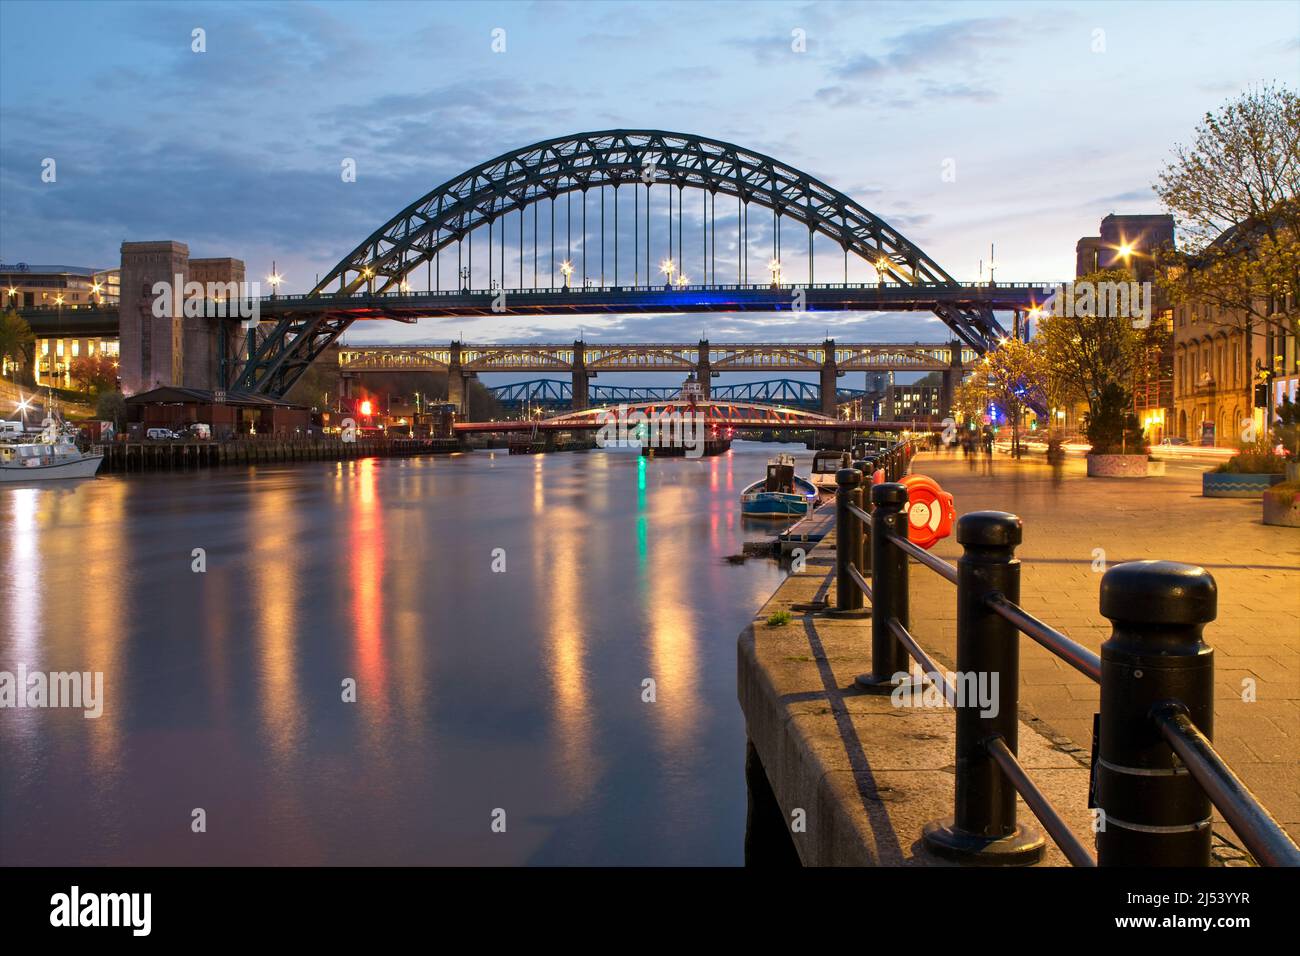 Die Tyne Bridge ist eine durch Bogenbrücke über den Fluss Tyne im Nordosten Englands, Verknüpfung von Newcastle Upon Tyne und Gateshead. Stockfoto